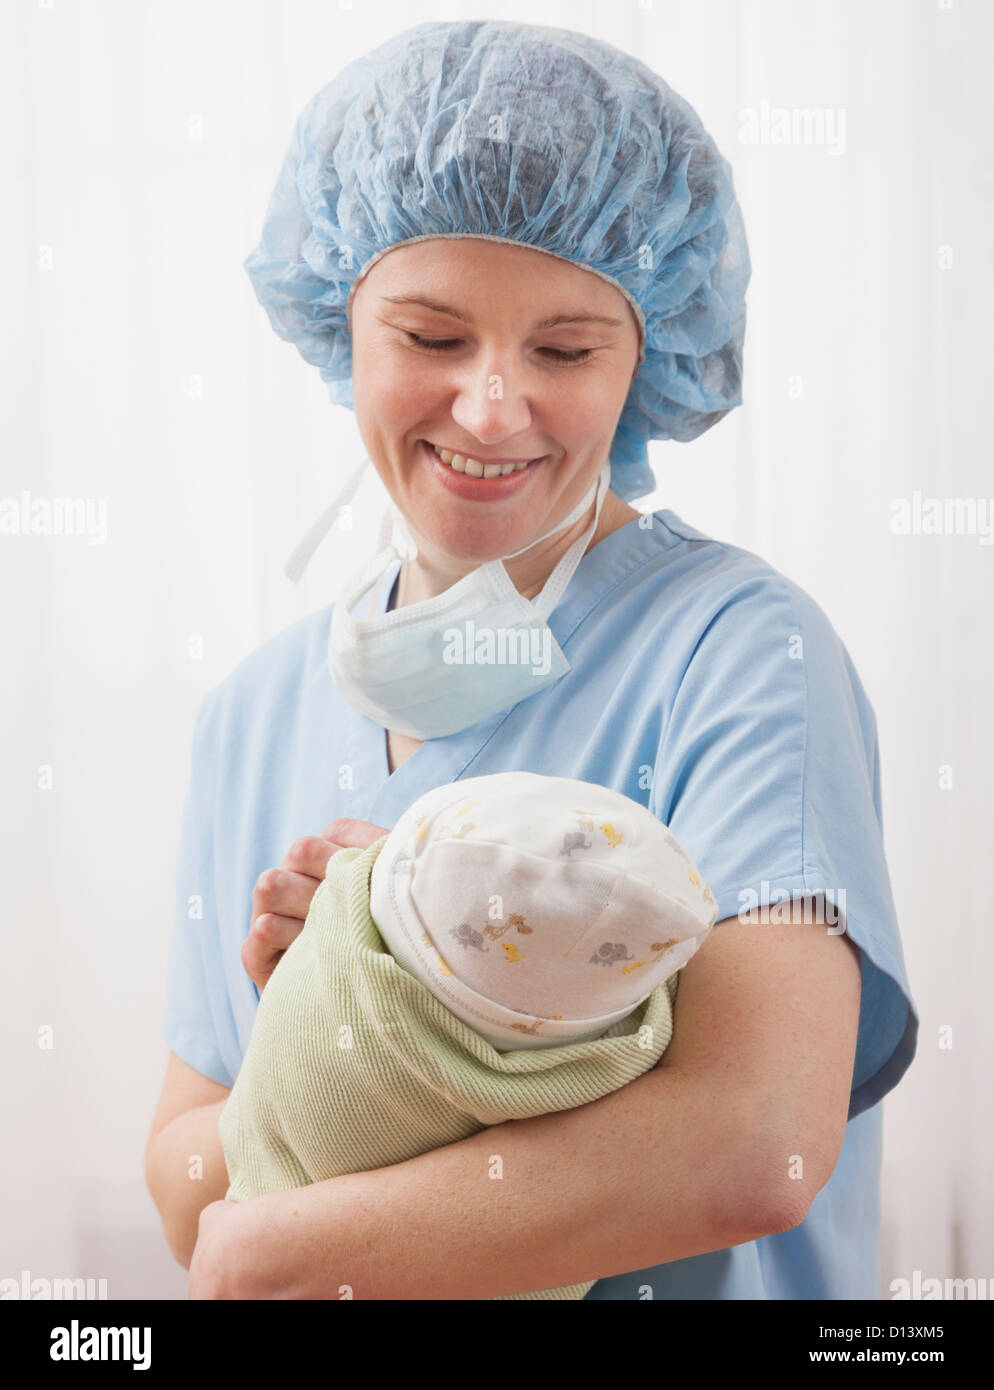 États-unis, Illinois, Metamora, Female nurse holding newborn baby Banque D'Images